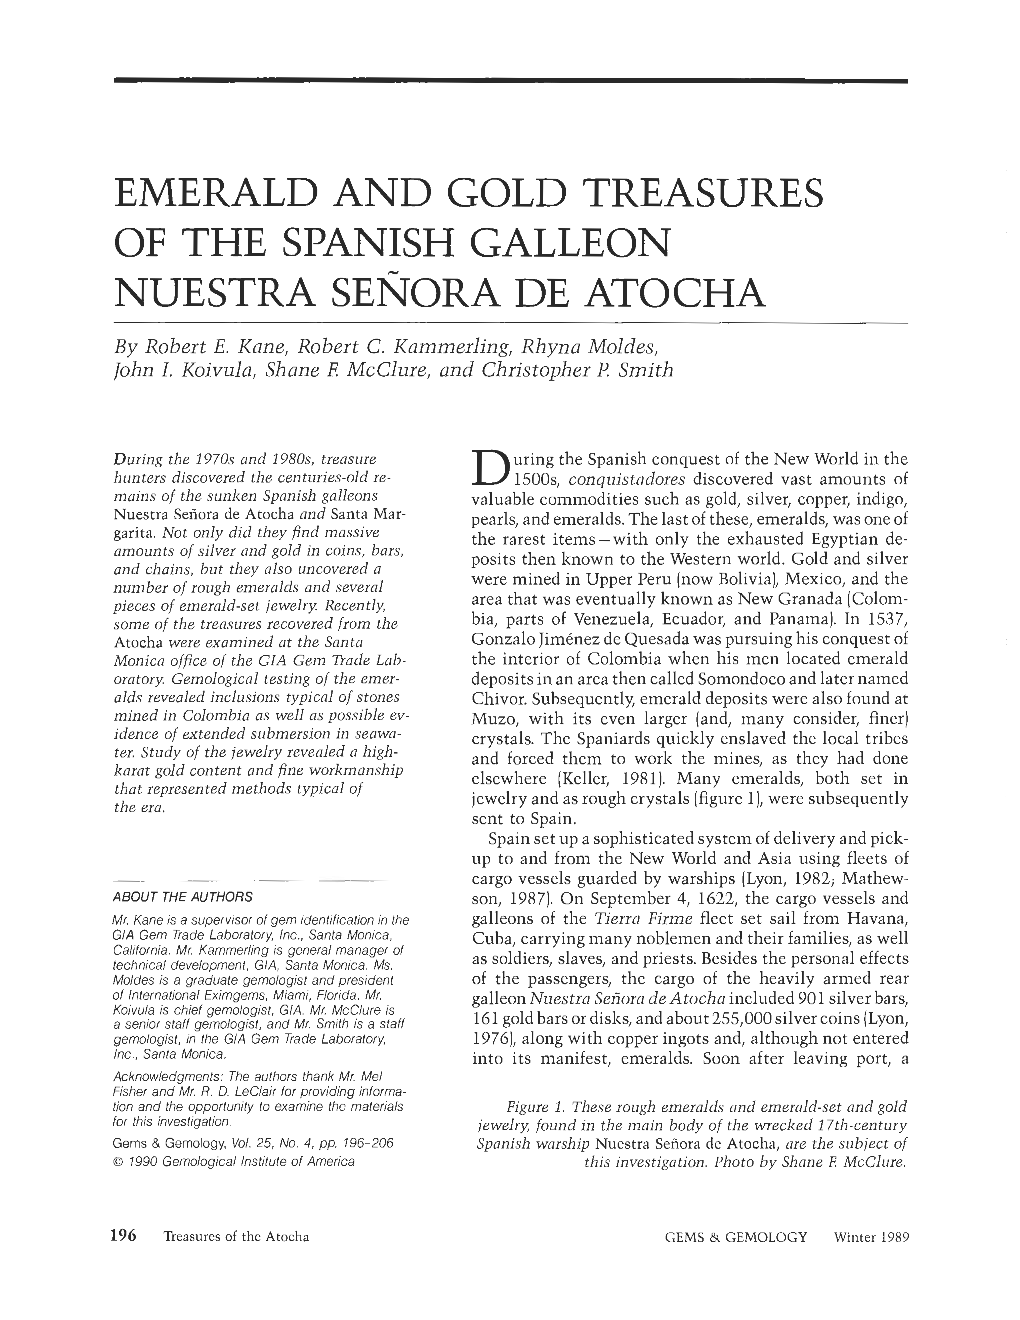 Emerald and Gold Treasures of the Spanish Galleon Nuestra Senora De Atocha